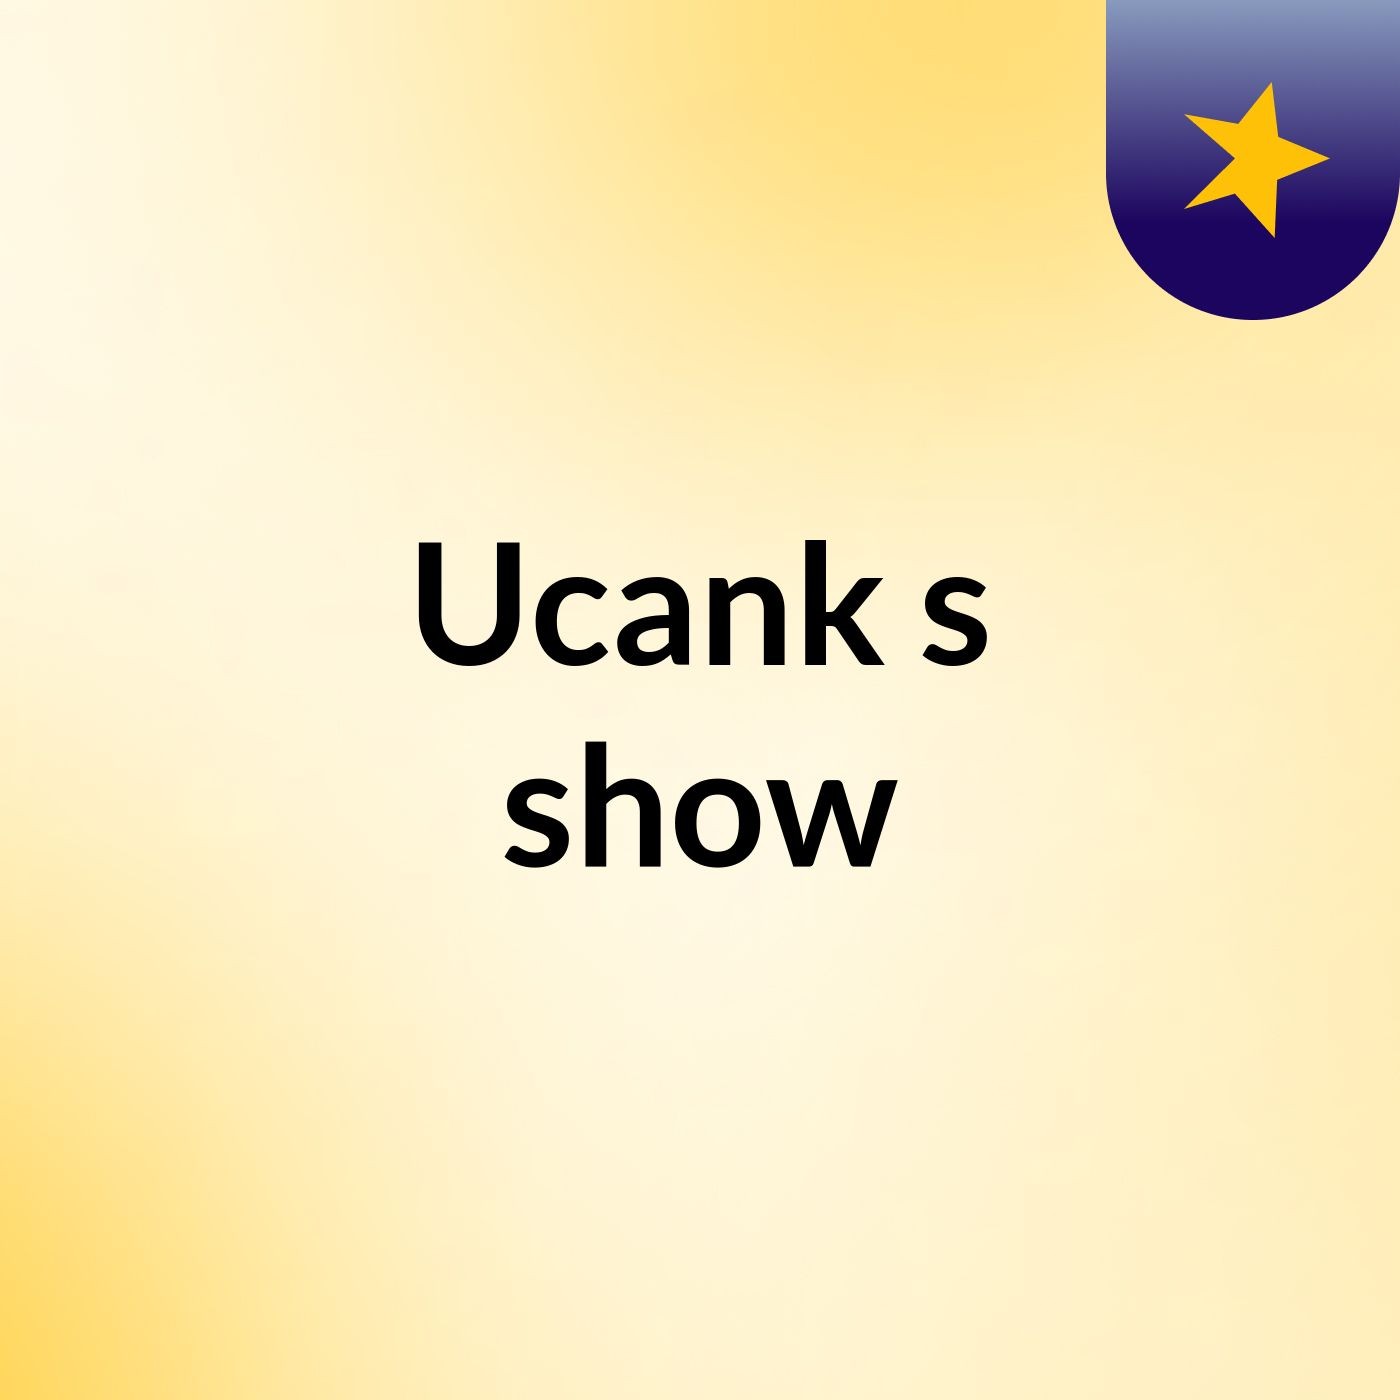 Ucank's show